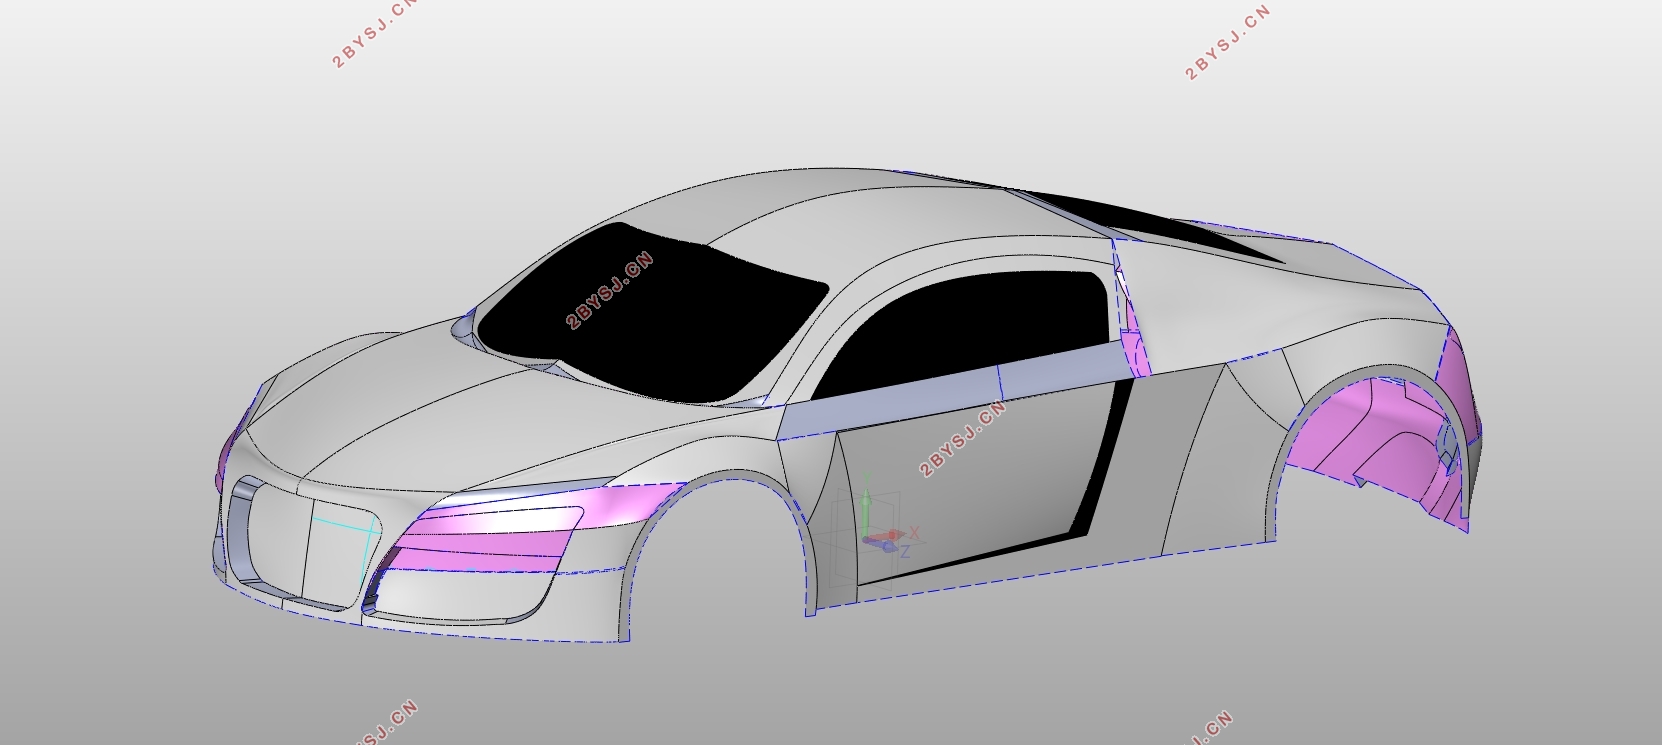 微型两座电动轿车车身造型设计及空气动力学分析(含CAD图,IGS三维图)